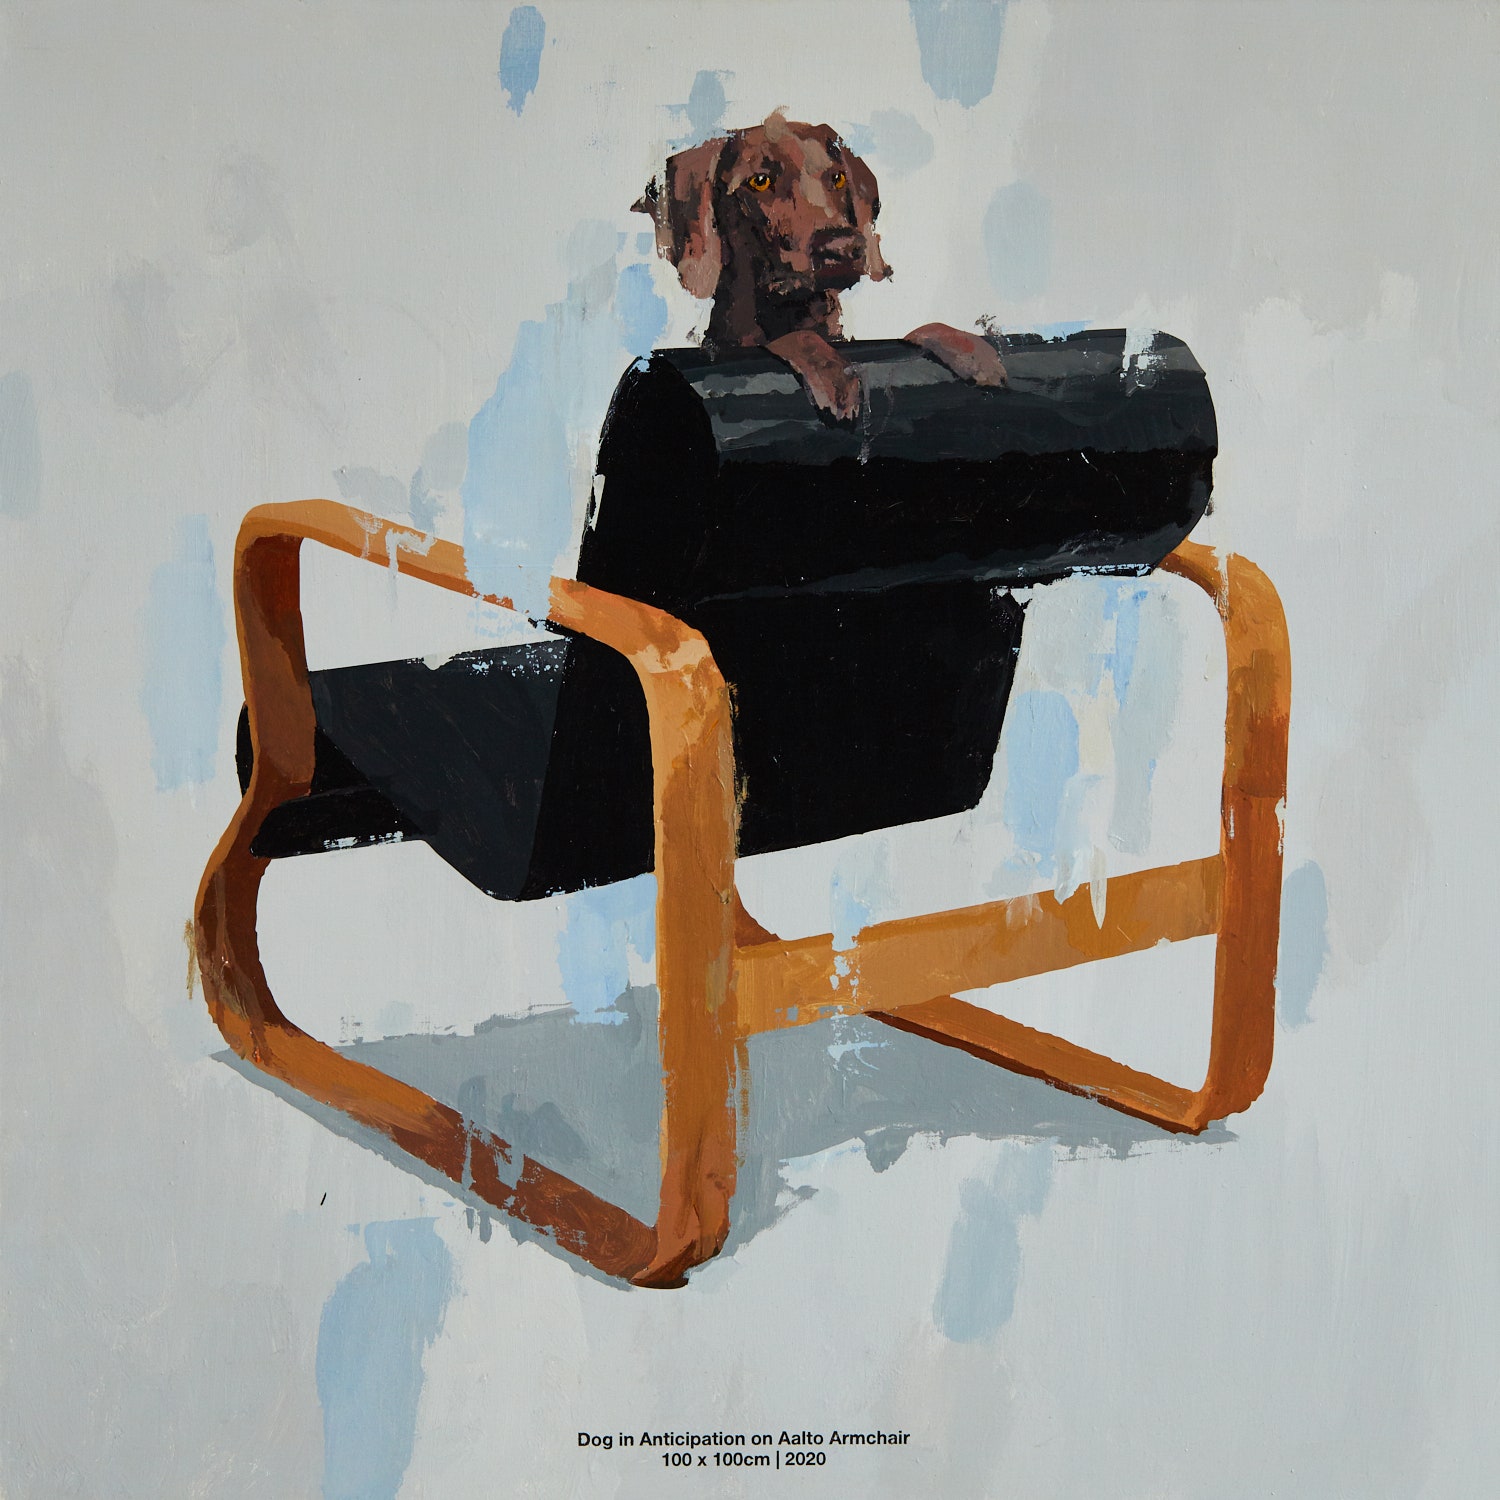 Dog in Anticipation on Aalto Armchair. 2020. 100 х 100 см.